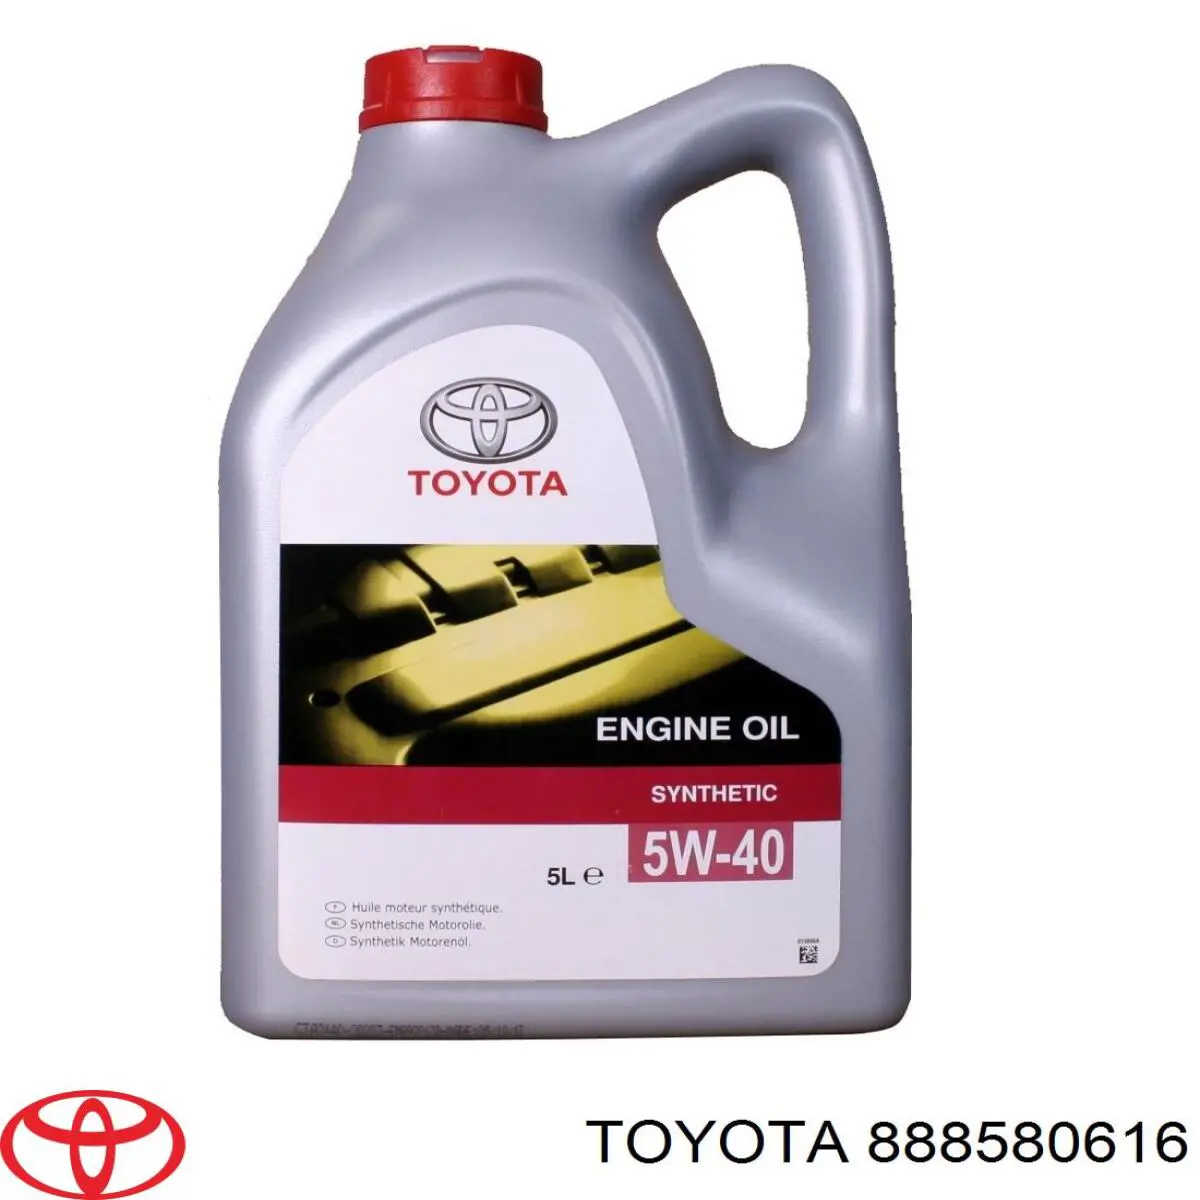  Трансмиссионное масло Toyota (888580616)